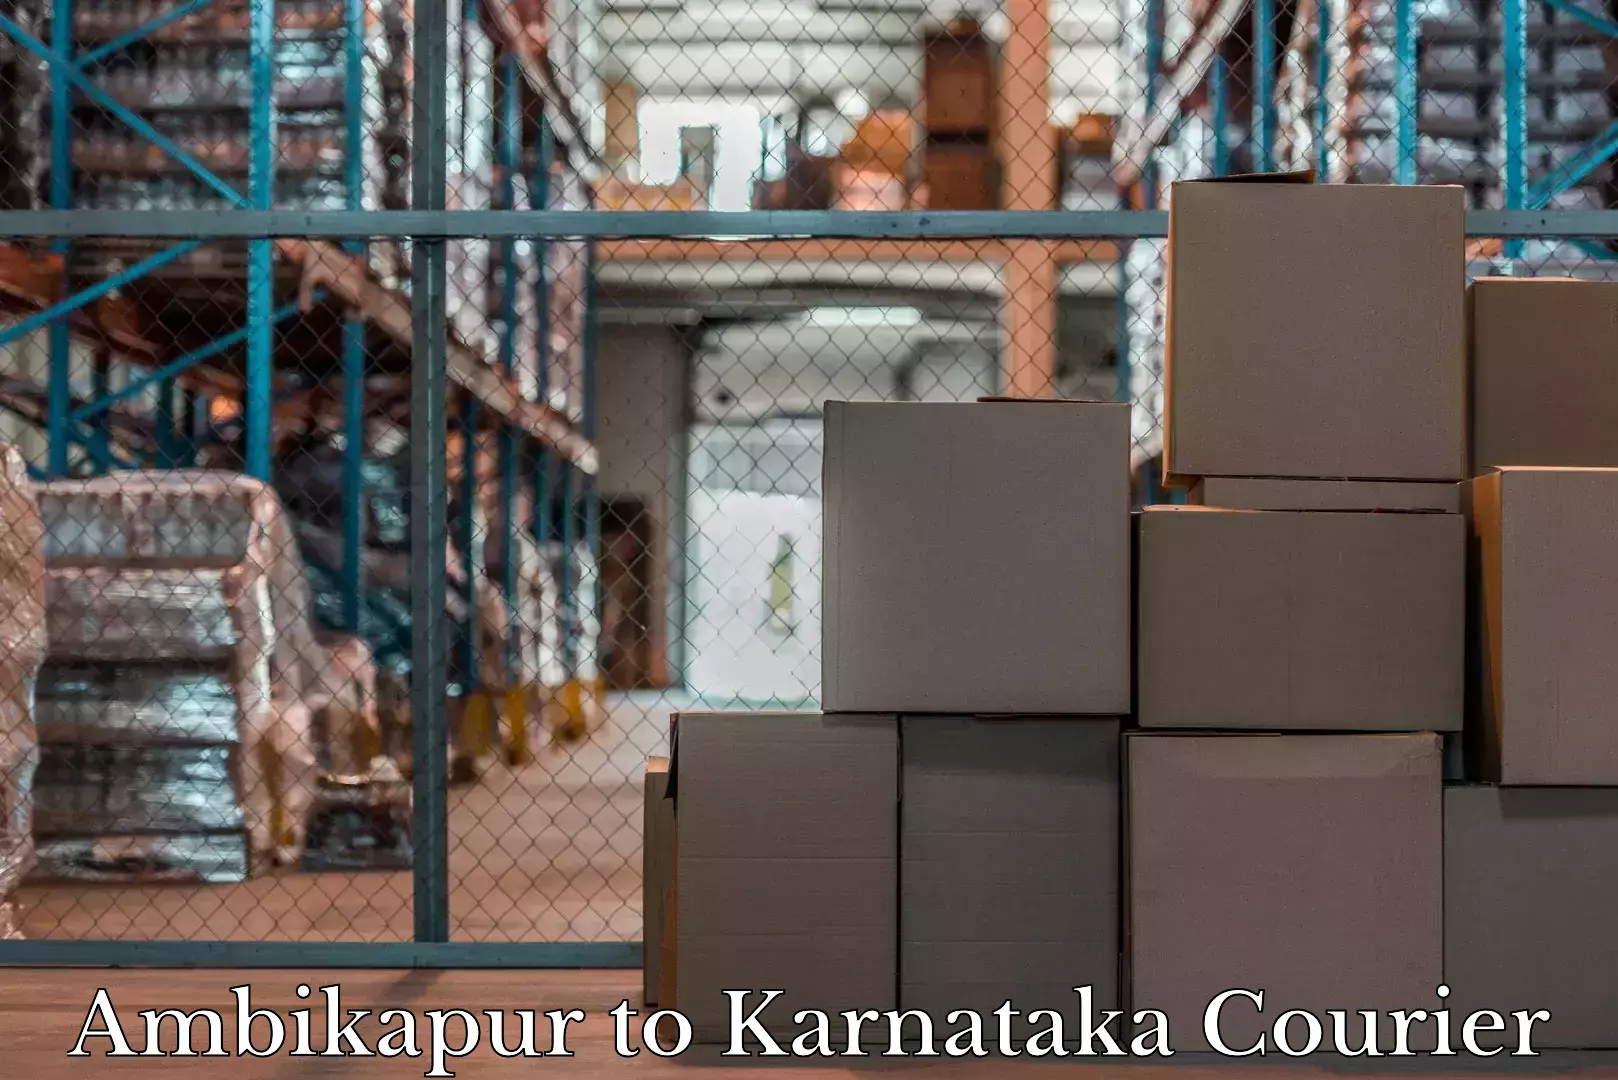 Door-to-door baggage service Ambikapur to Karnataka